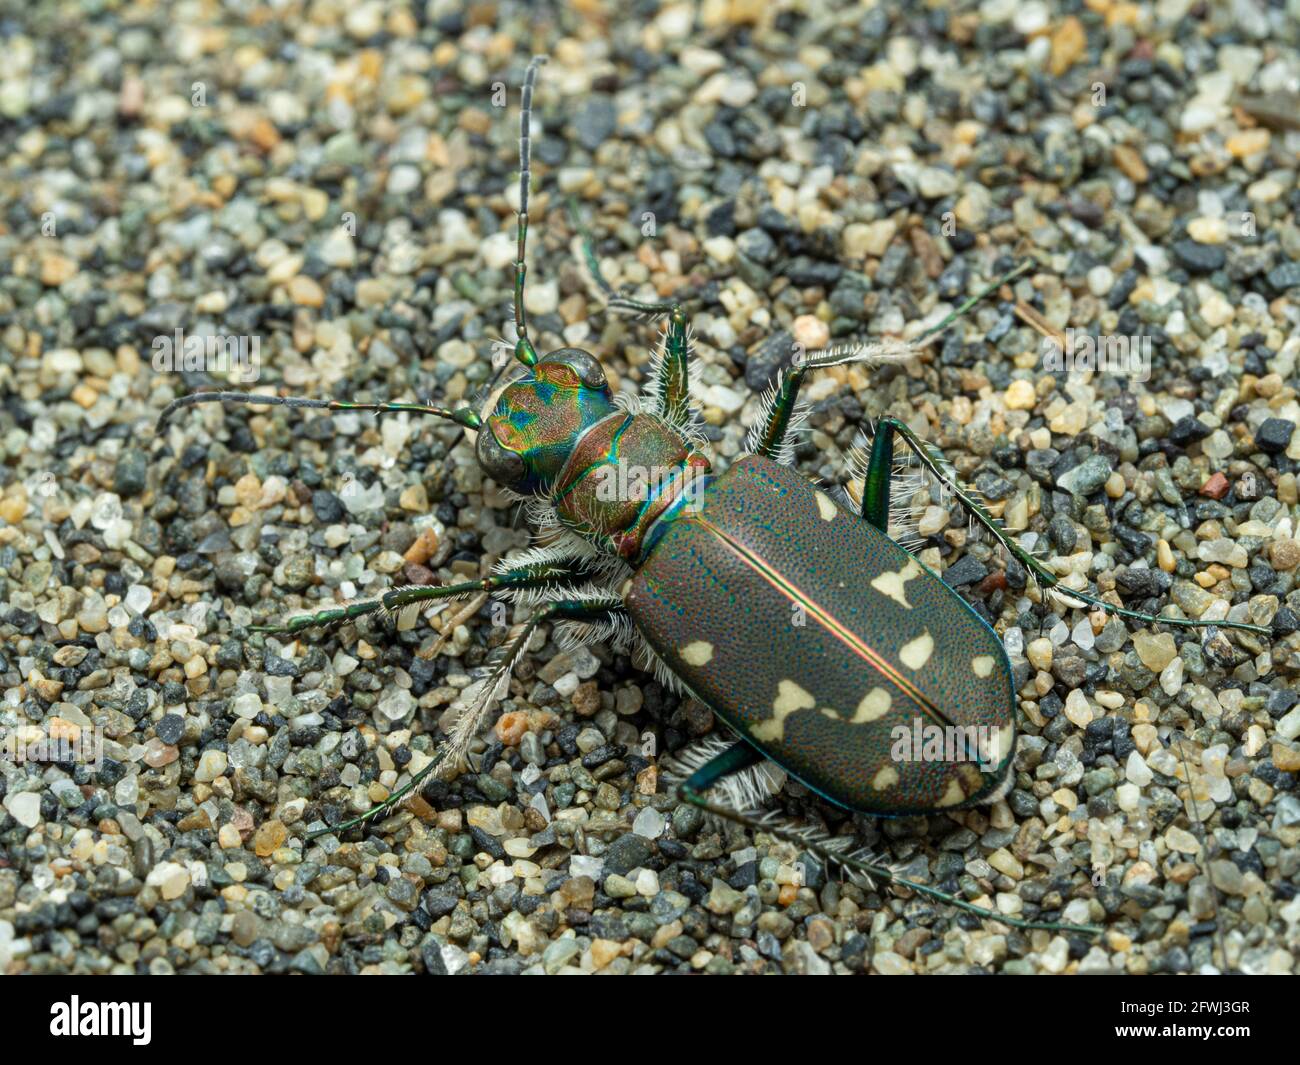 Vista dorsale di un scarabeo predatore occidentale, Cicindela oregona, che mostra i colori e le marcature attraenti caratteristici della specie Foto Stock